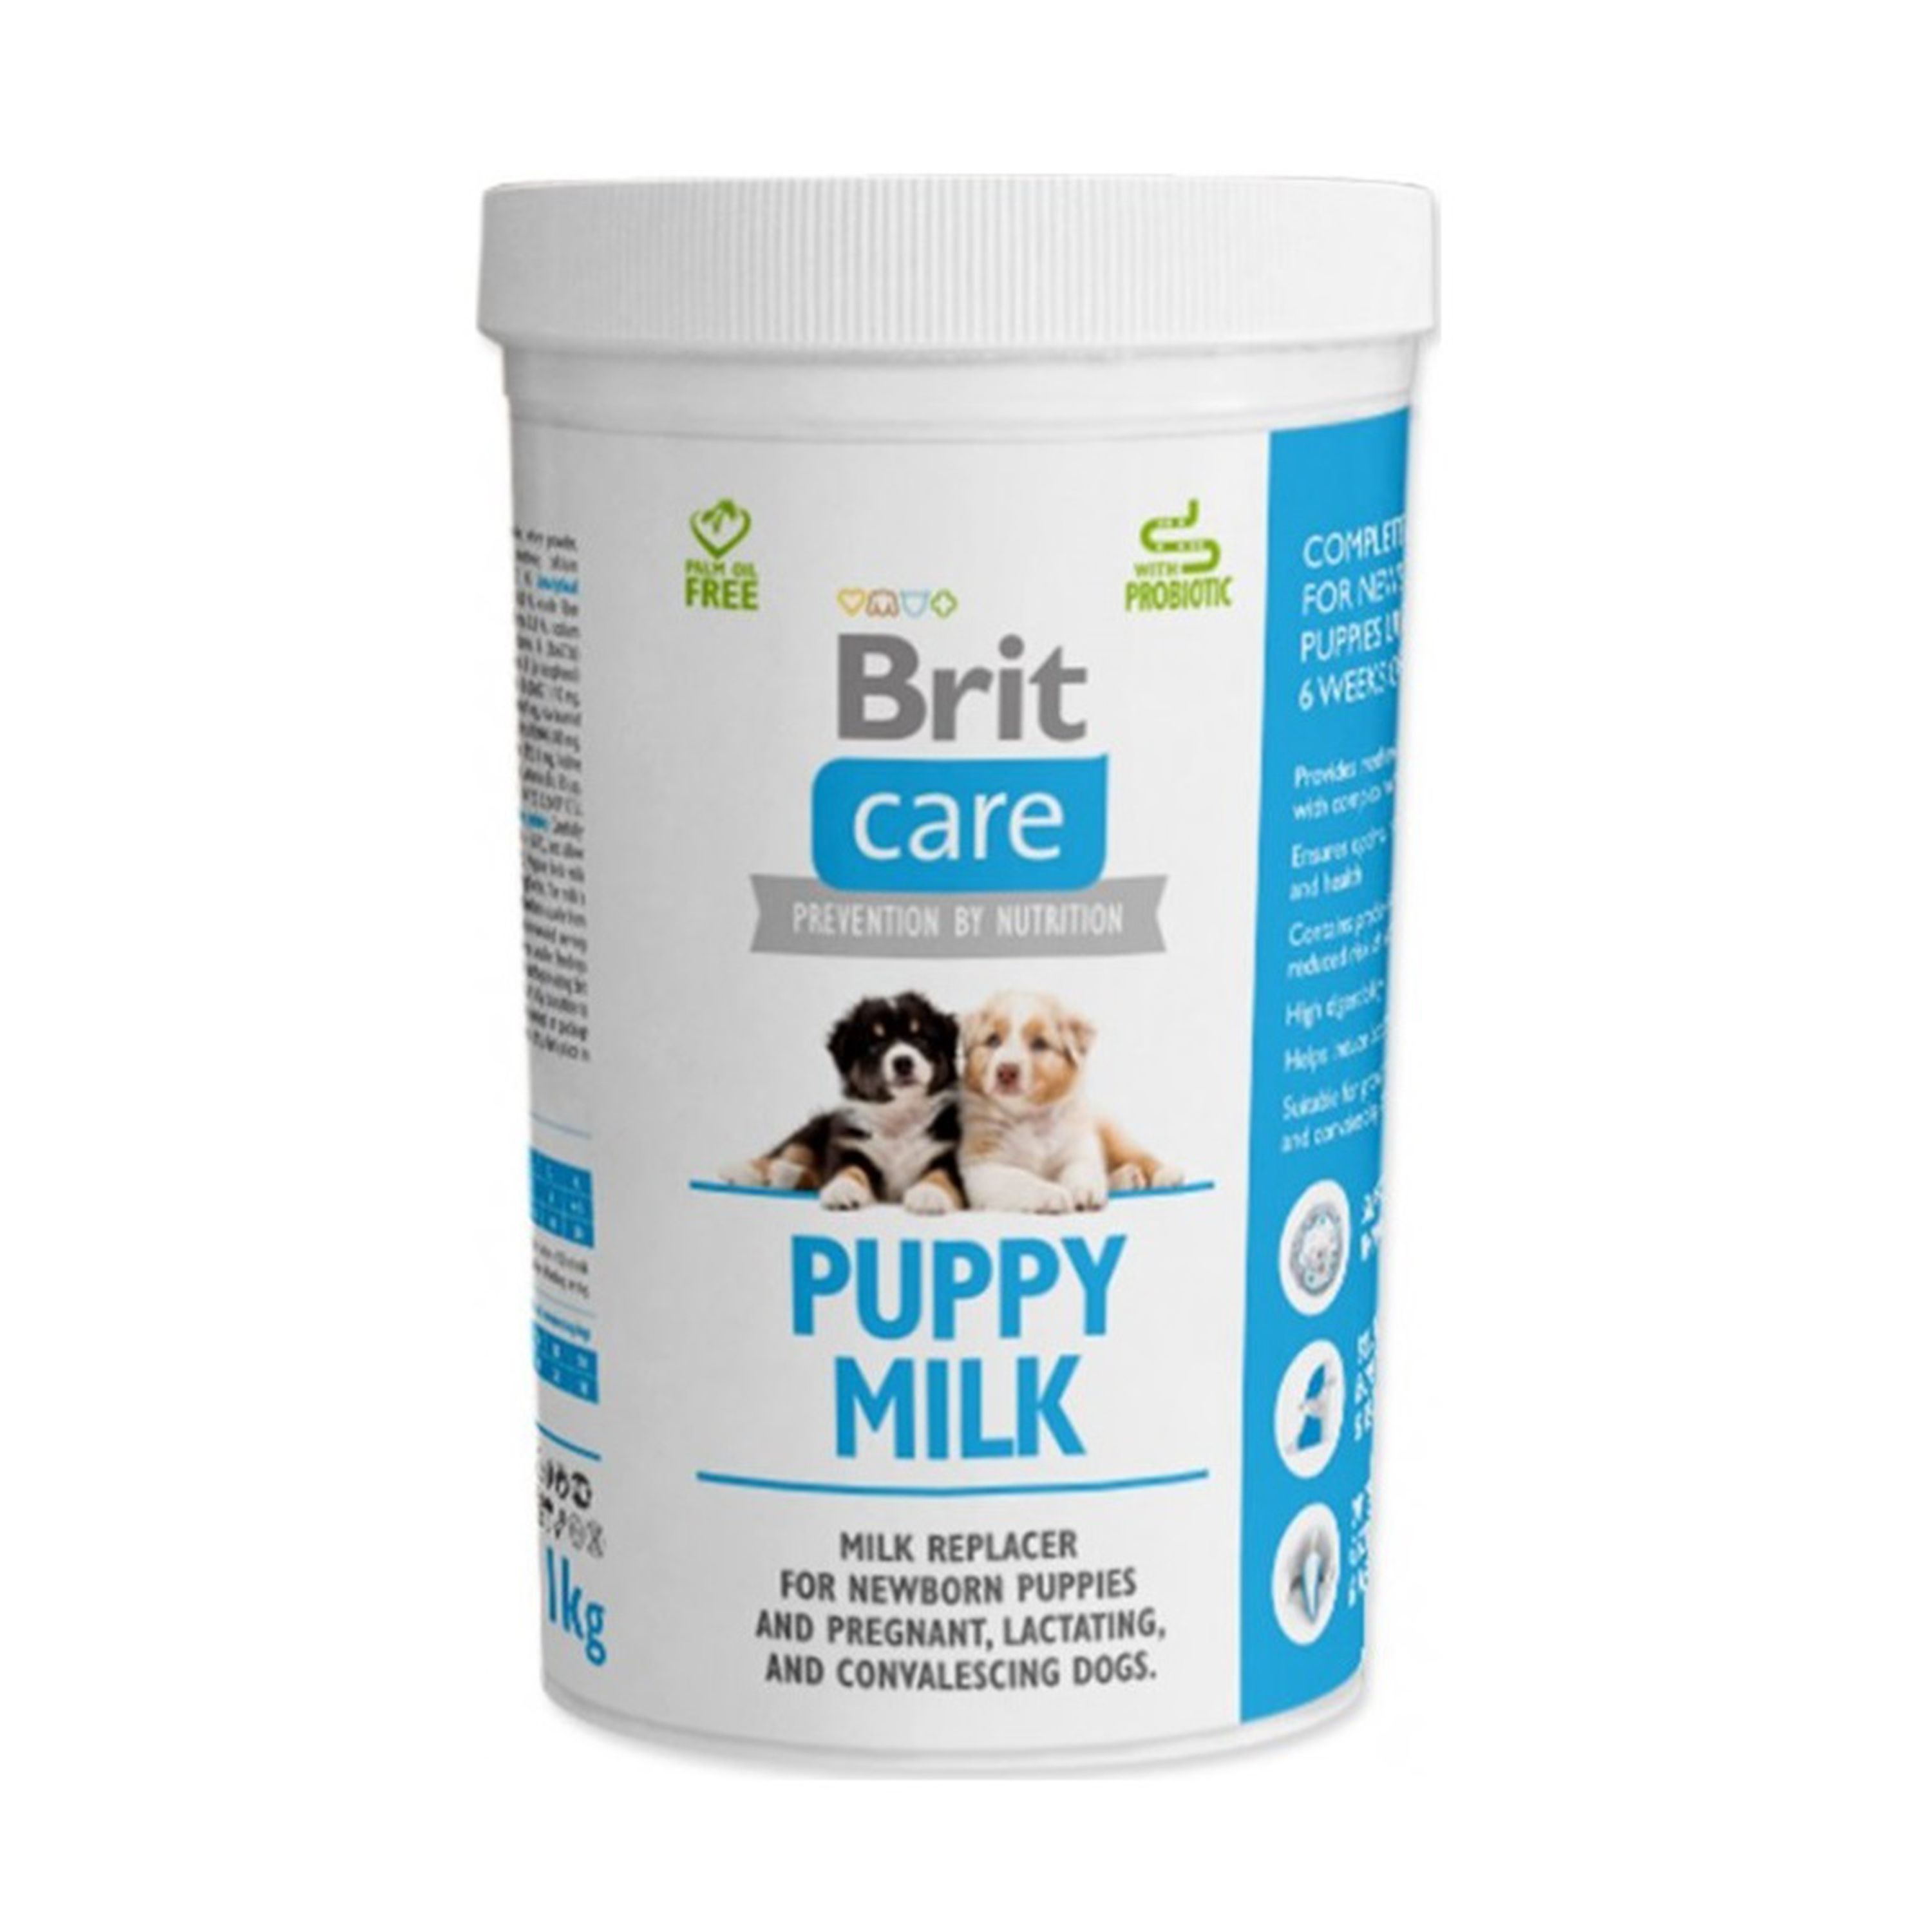 Brit Care Puppy Milk, 1 kg